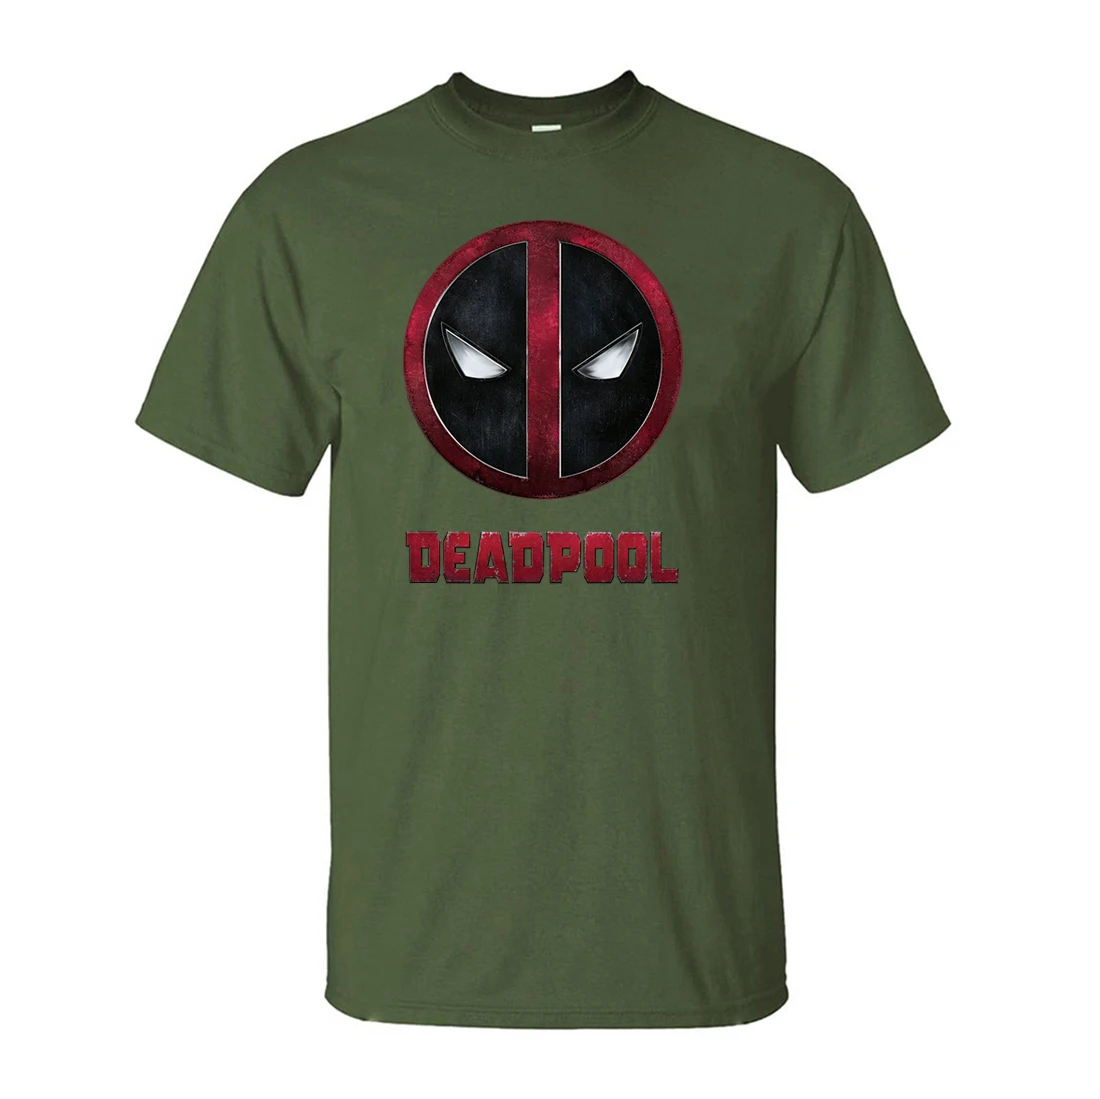 Одежда «Супергерои» с принтом "Дэдпул" Для мужчин футболка с коротким рукавом Летние черные футболки Повседневное хлопок Softwear футболка для фанатов - Цвет: Dark Green